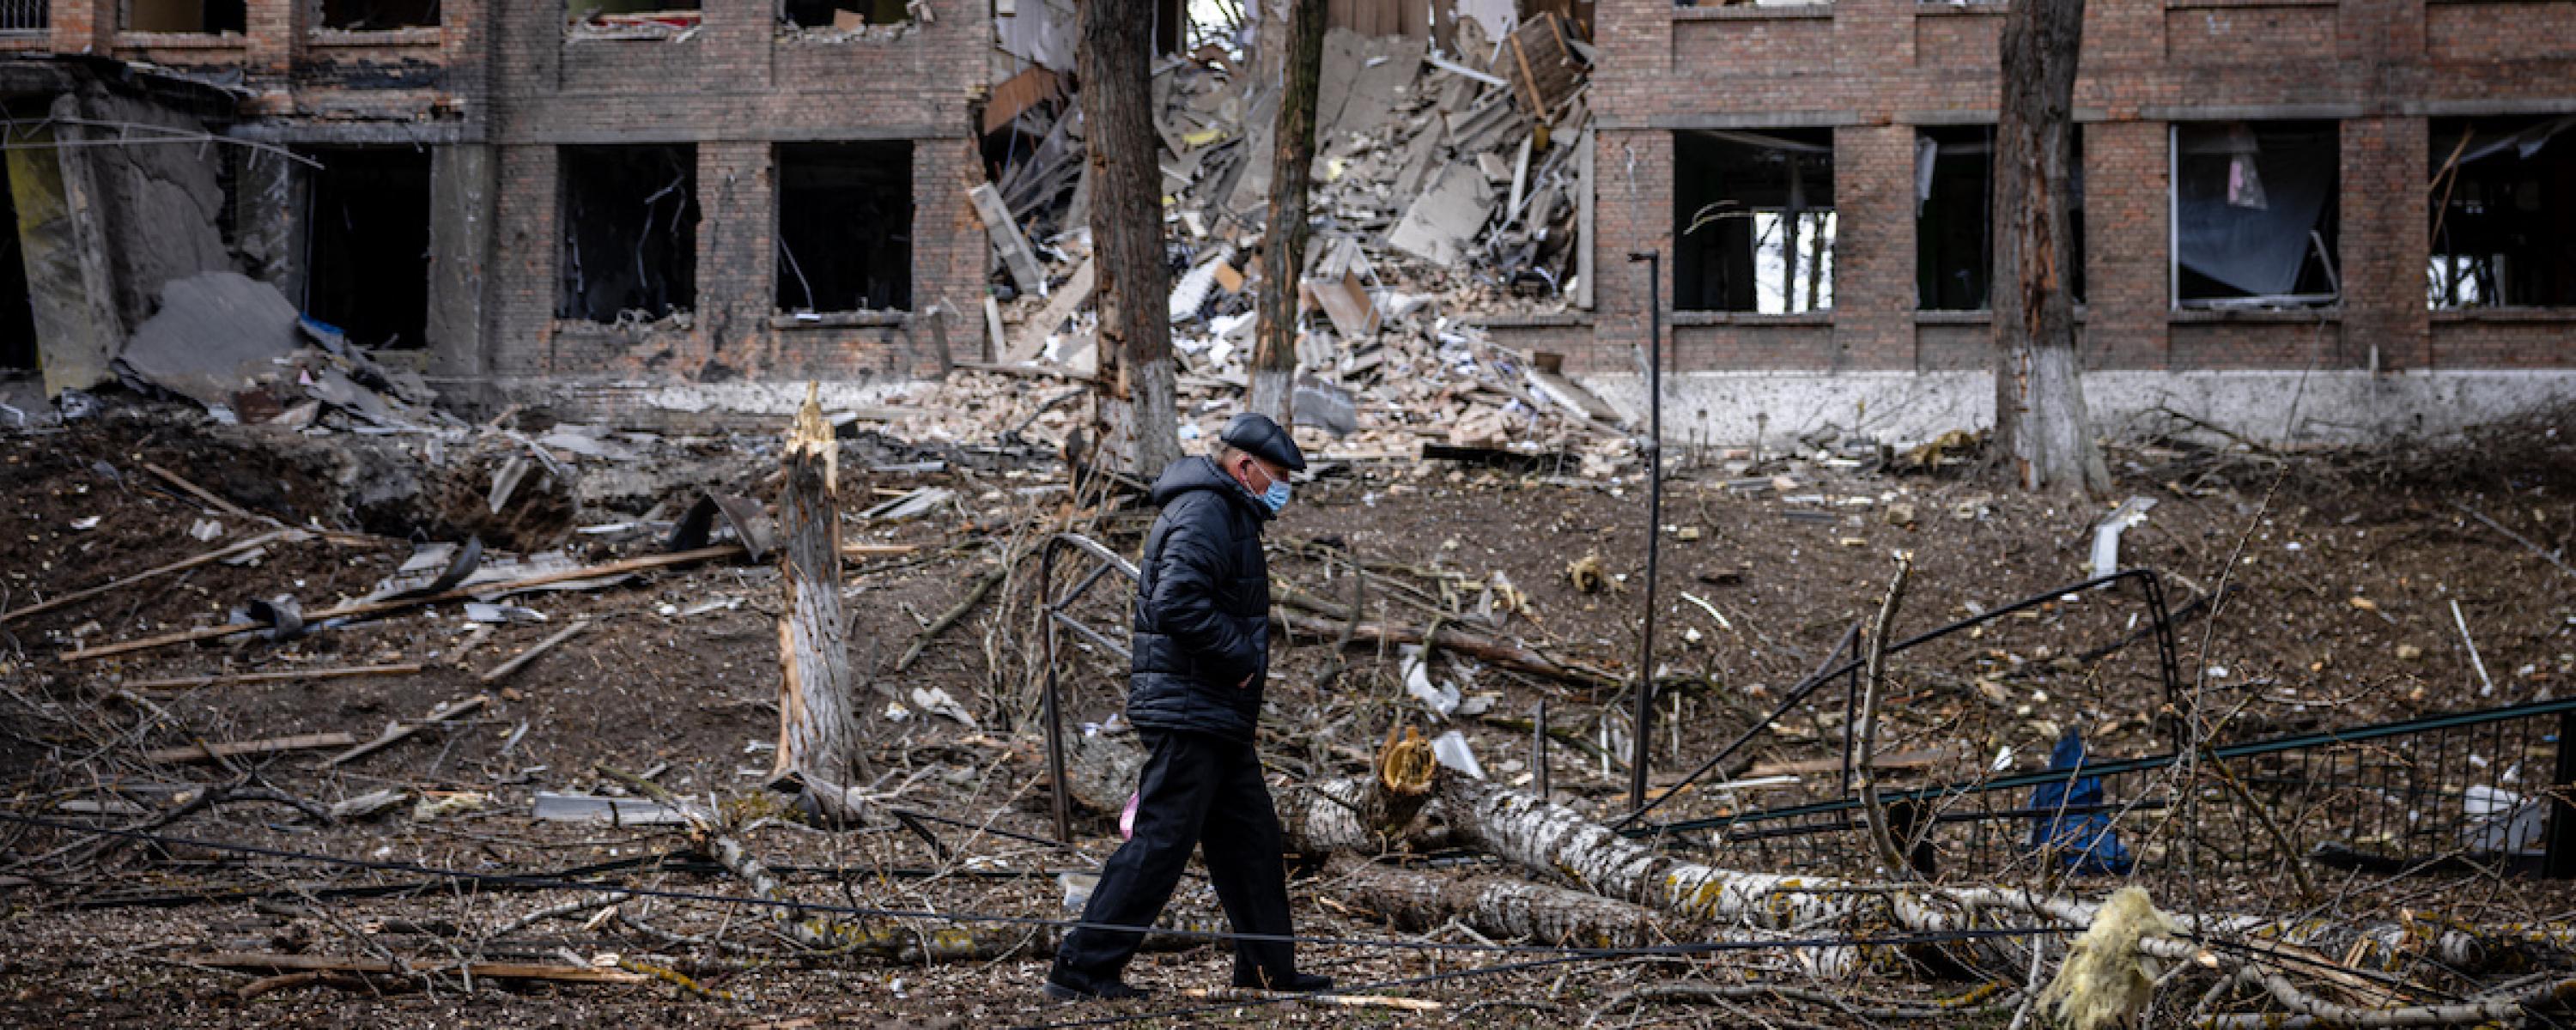 Ein alter Mann geht mit gesenktem Blick durch einen Trümmerhaufen vor einem zerstörten Wohngebäude.